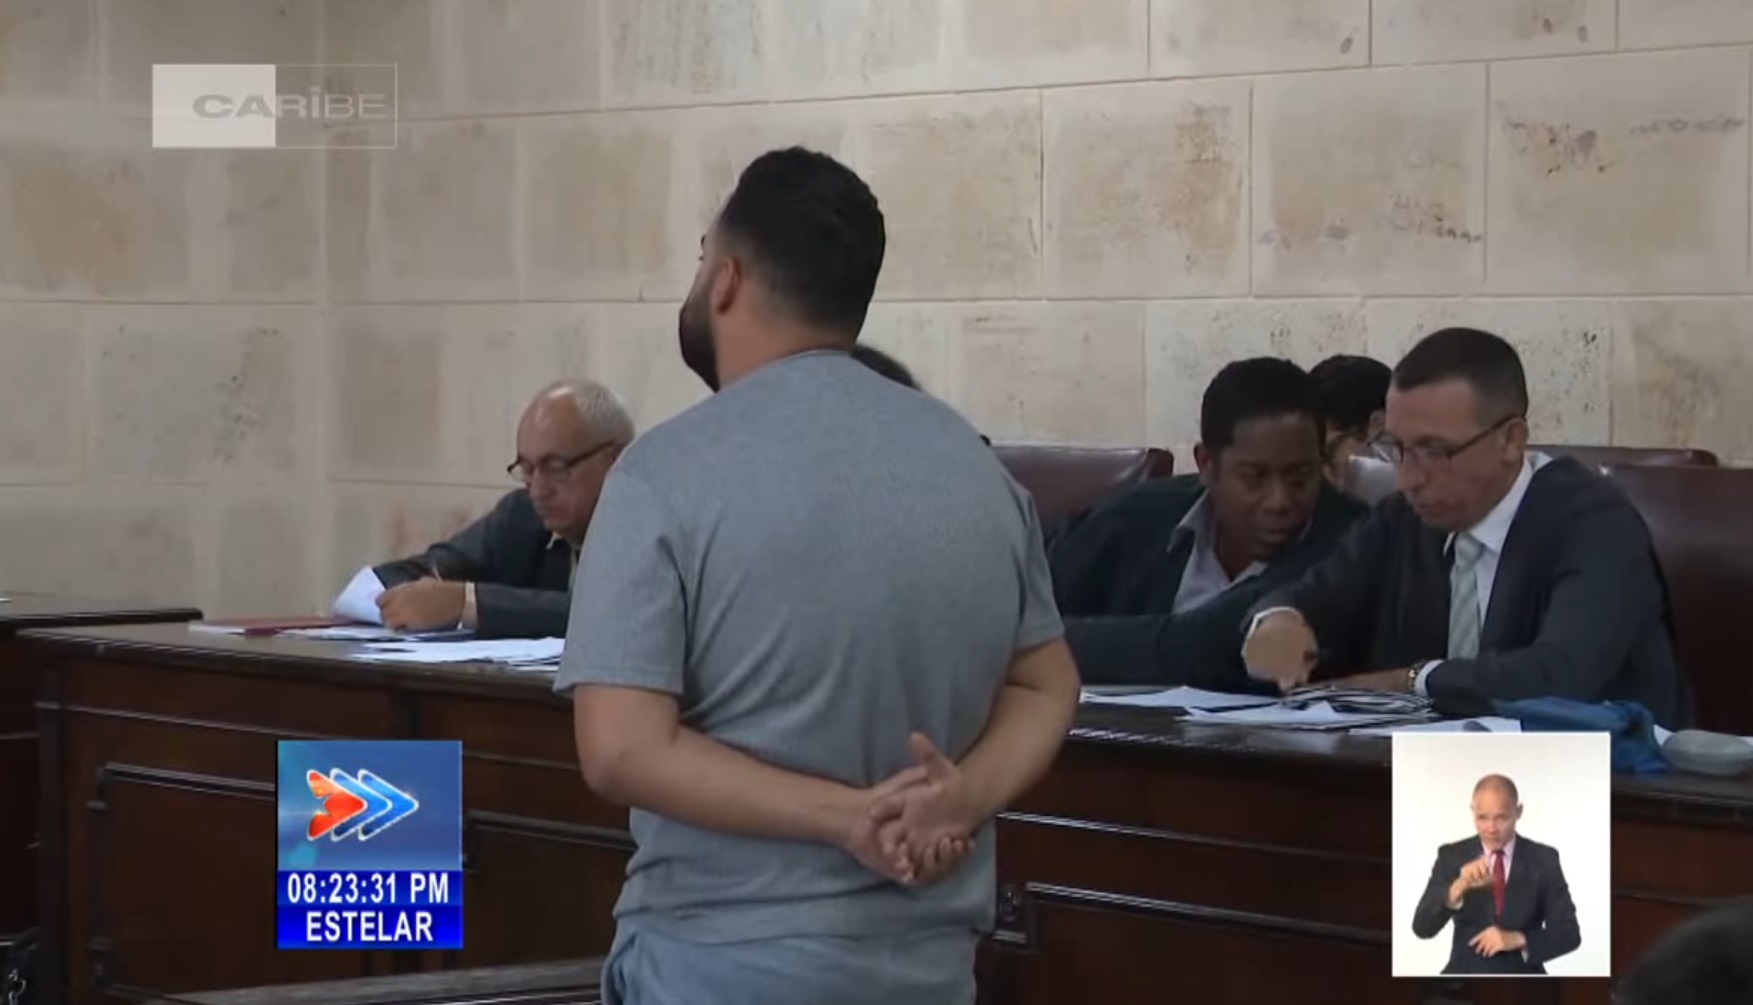 Juicio llevado a cabo en La Habana. (Captura de pantalla © Canal Caribe-Facebook)